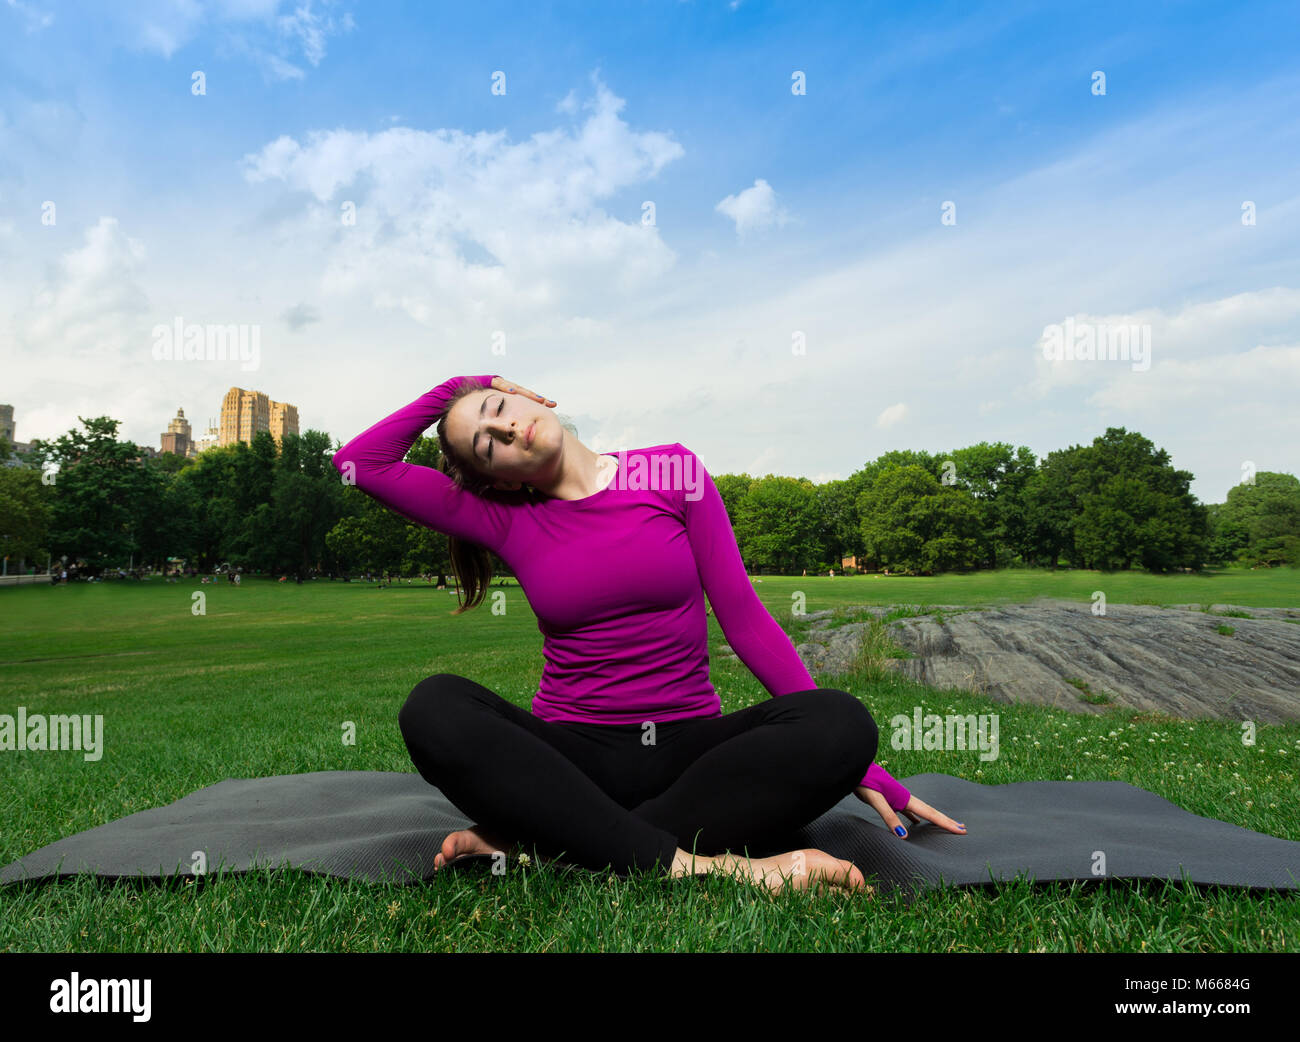 Junge kaukasier Frau übt Yoga im Central Park in New York City beim Tragen eines Magenta Top, schwarze Leggings und barfuss Stockfoto